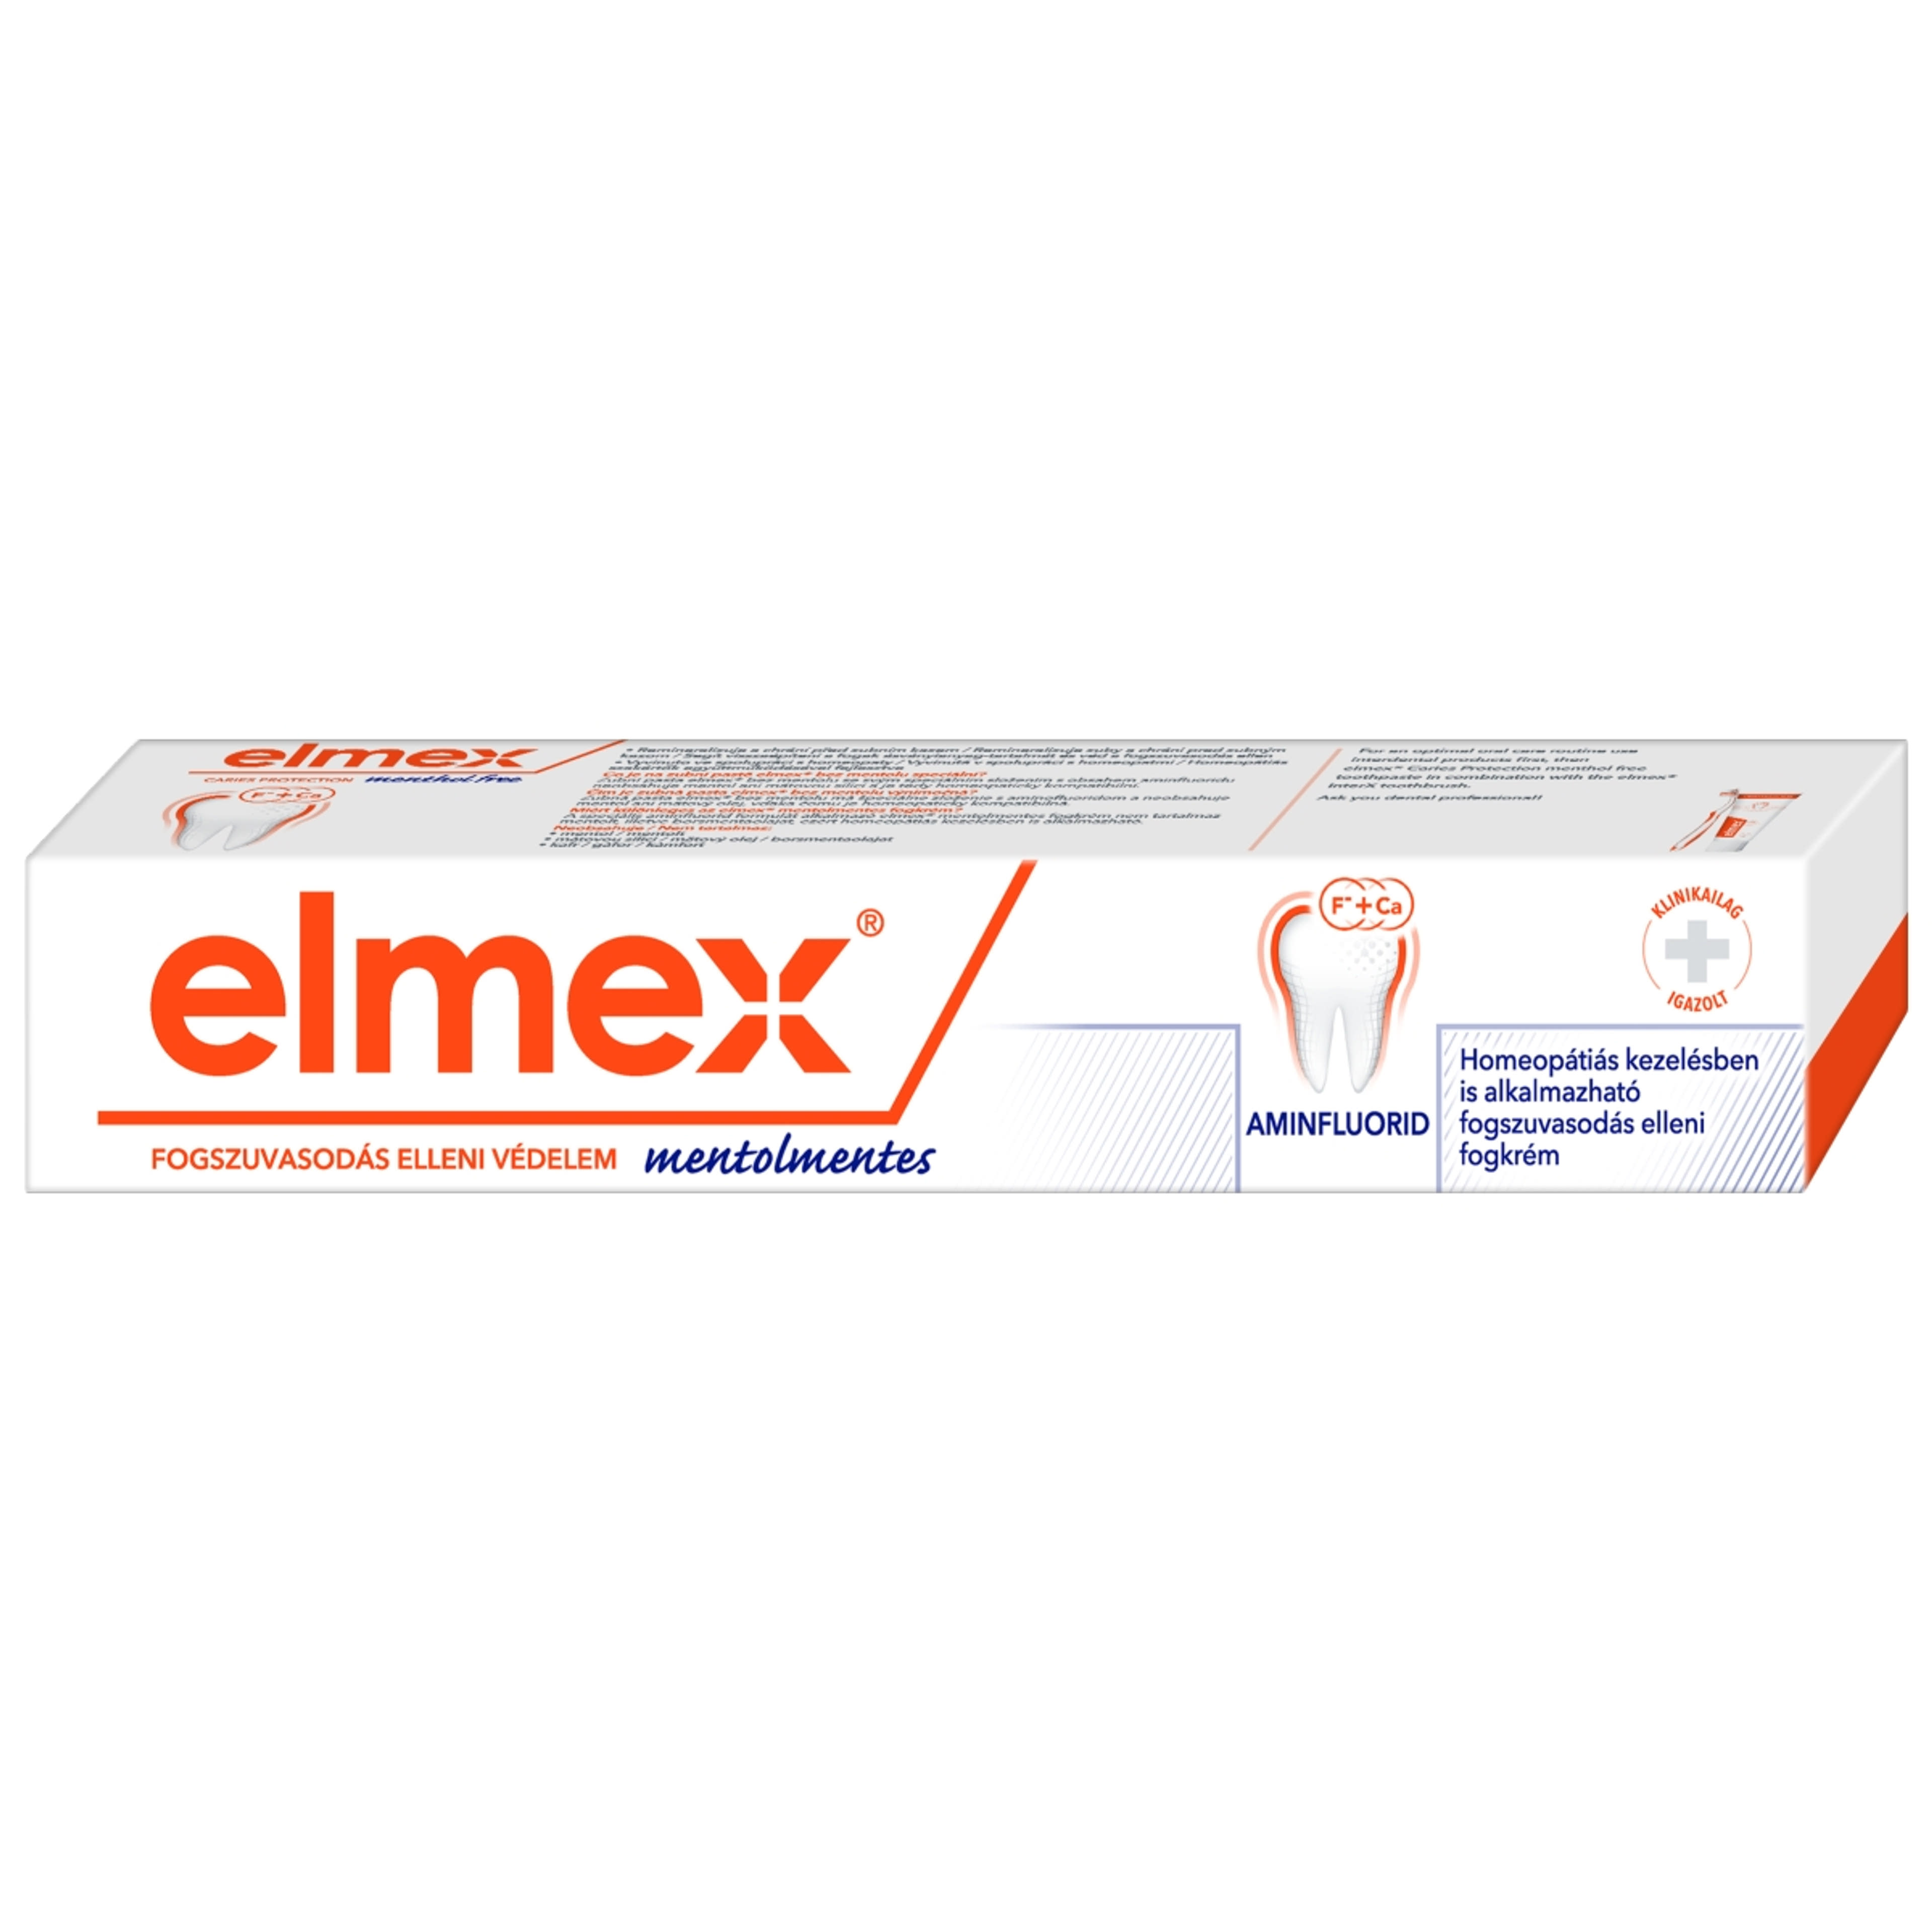 Elmex Mentolmentes fogkrém - 75 ml-10